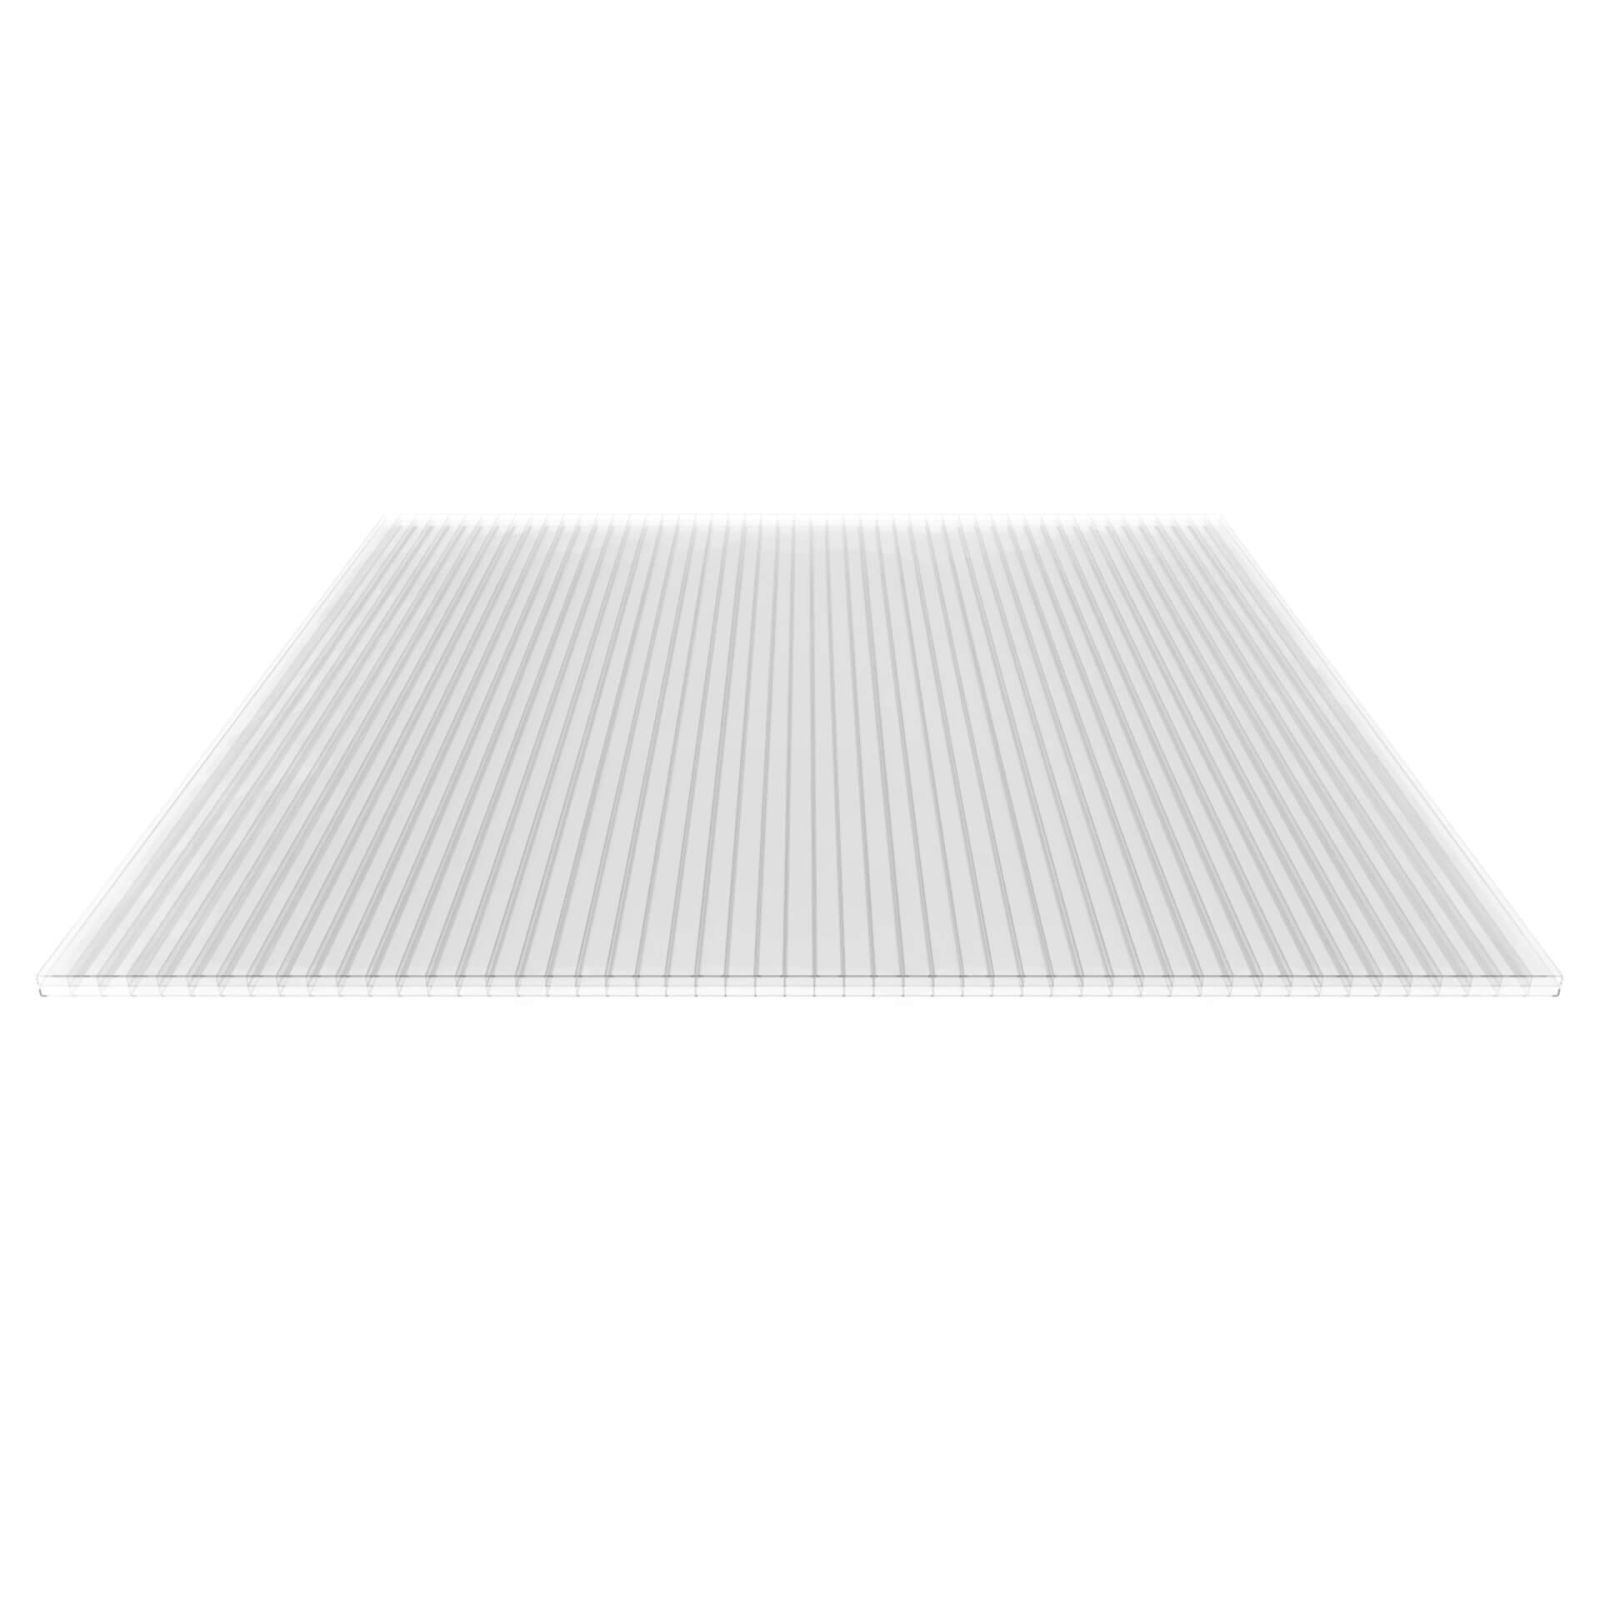 Polycarbonat Stegplatte | 16 mm | Profil DUO | Sparpaket | Plattenbreite 1200 mm | Klar | Breite 3,75 m | Länge 2,00 m #5